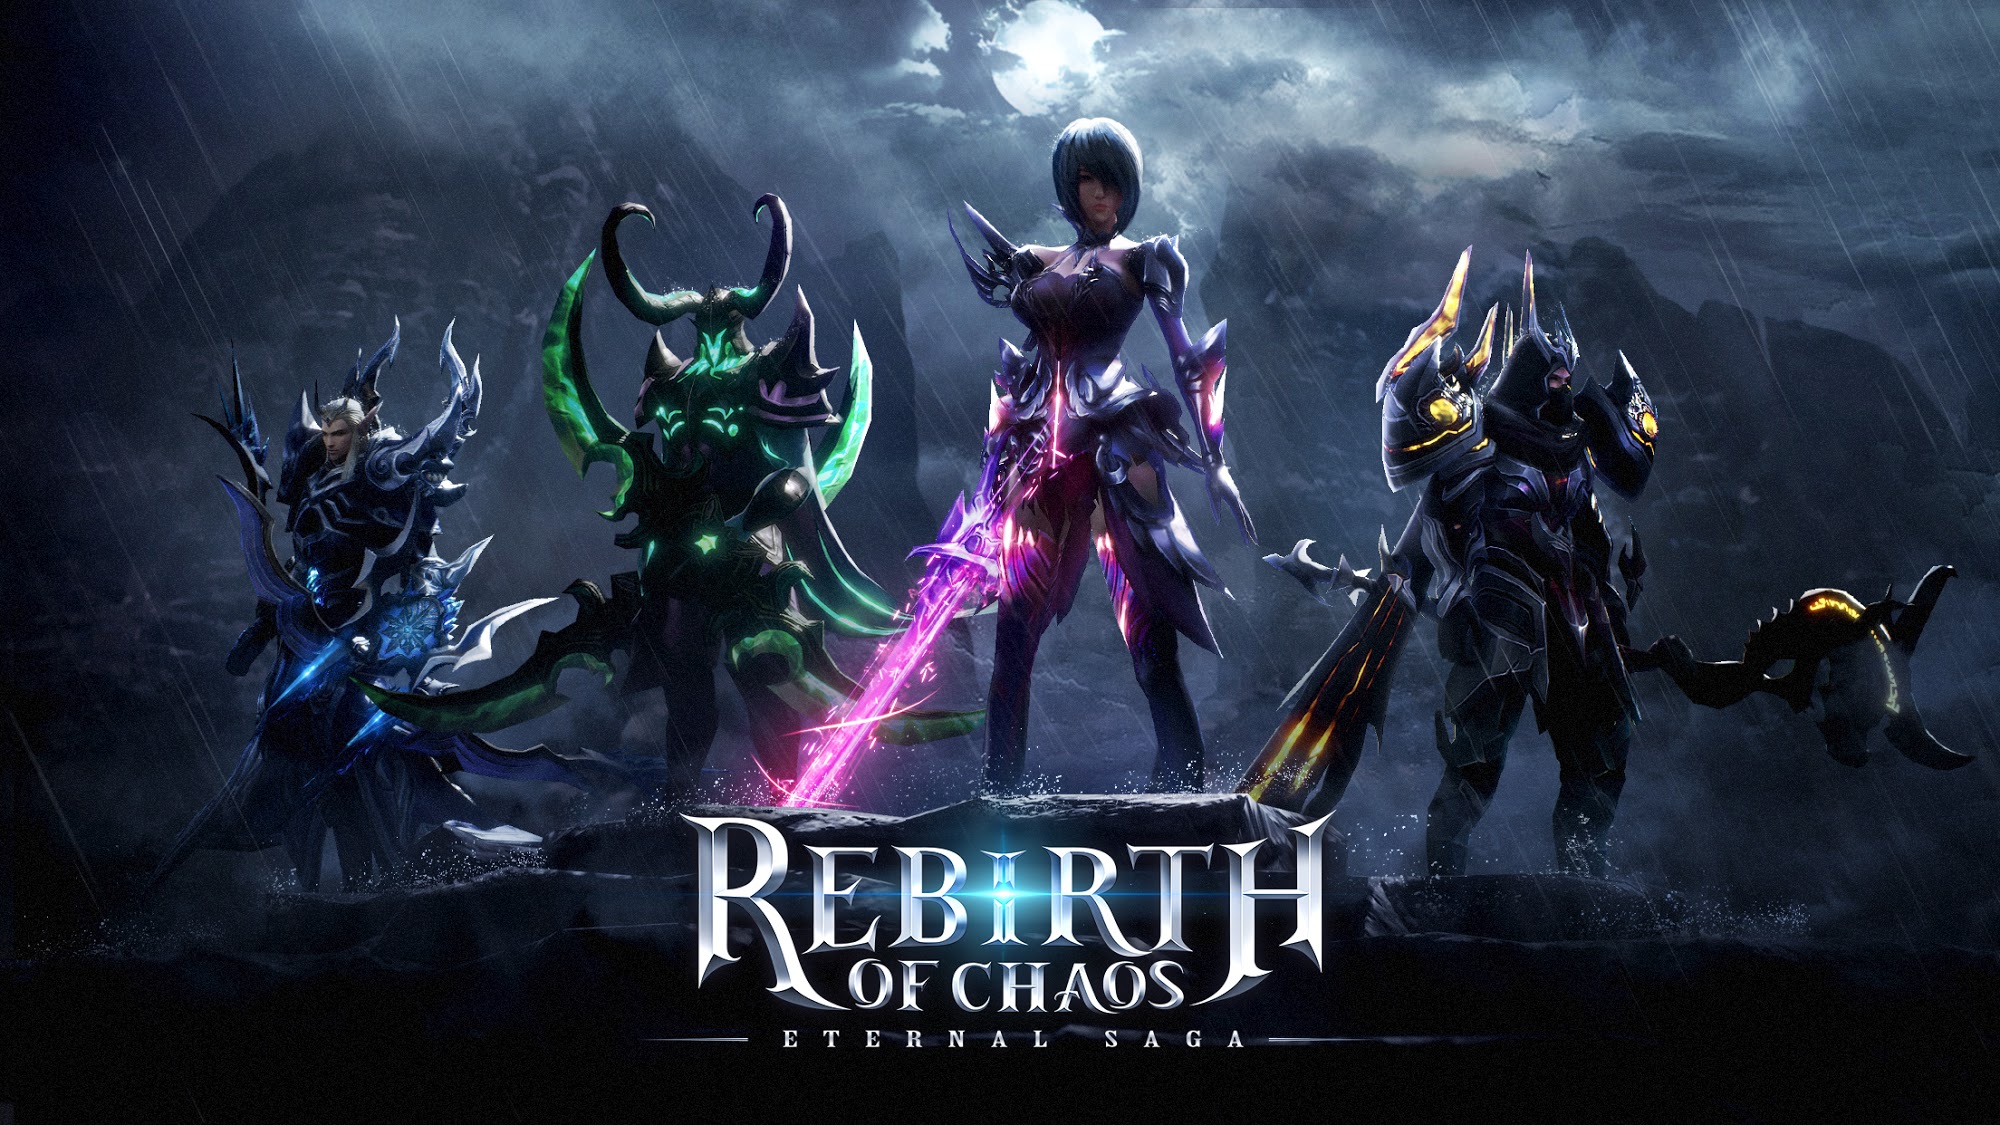 Descargar Rebirth of Chaos: Eternal saga gratis para Android.